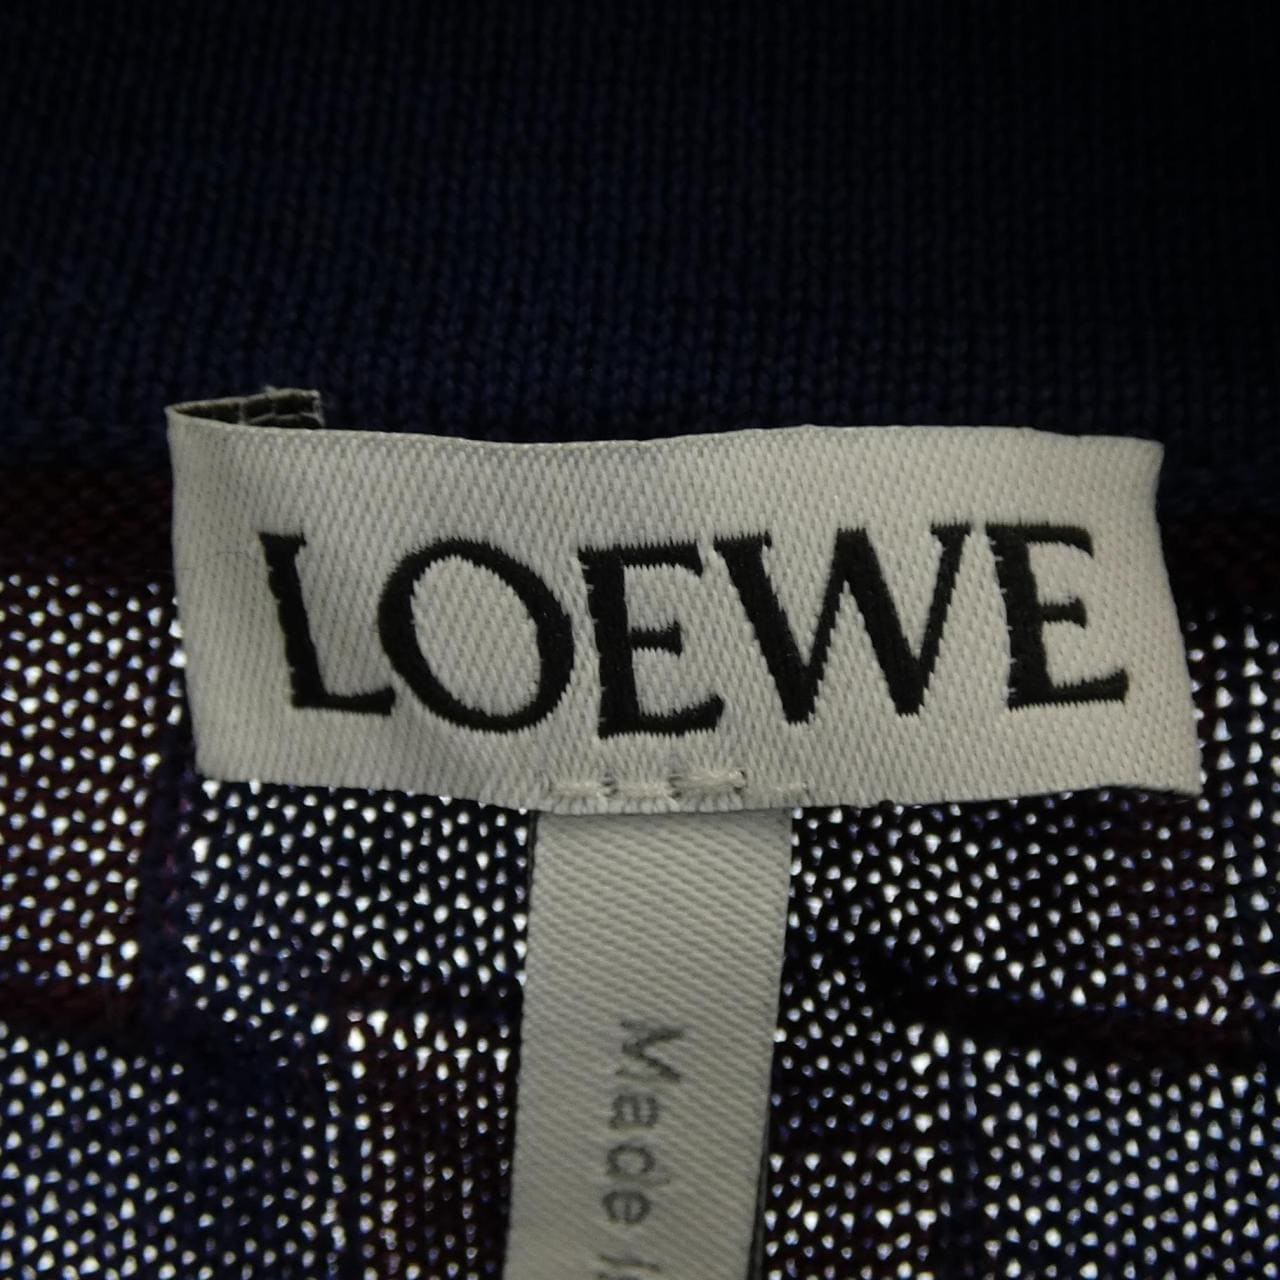 Loewe LOEWE top